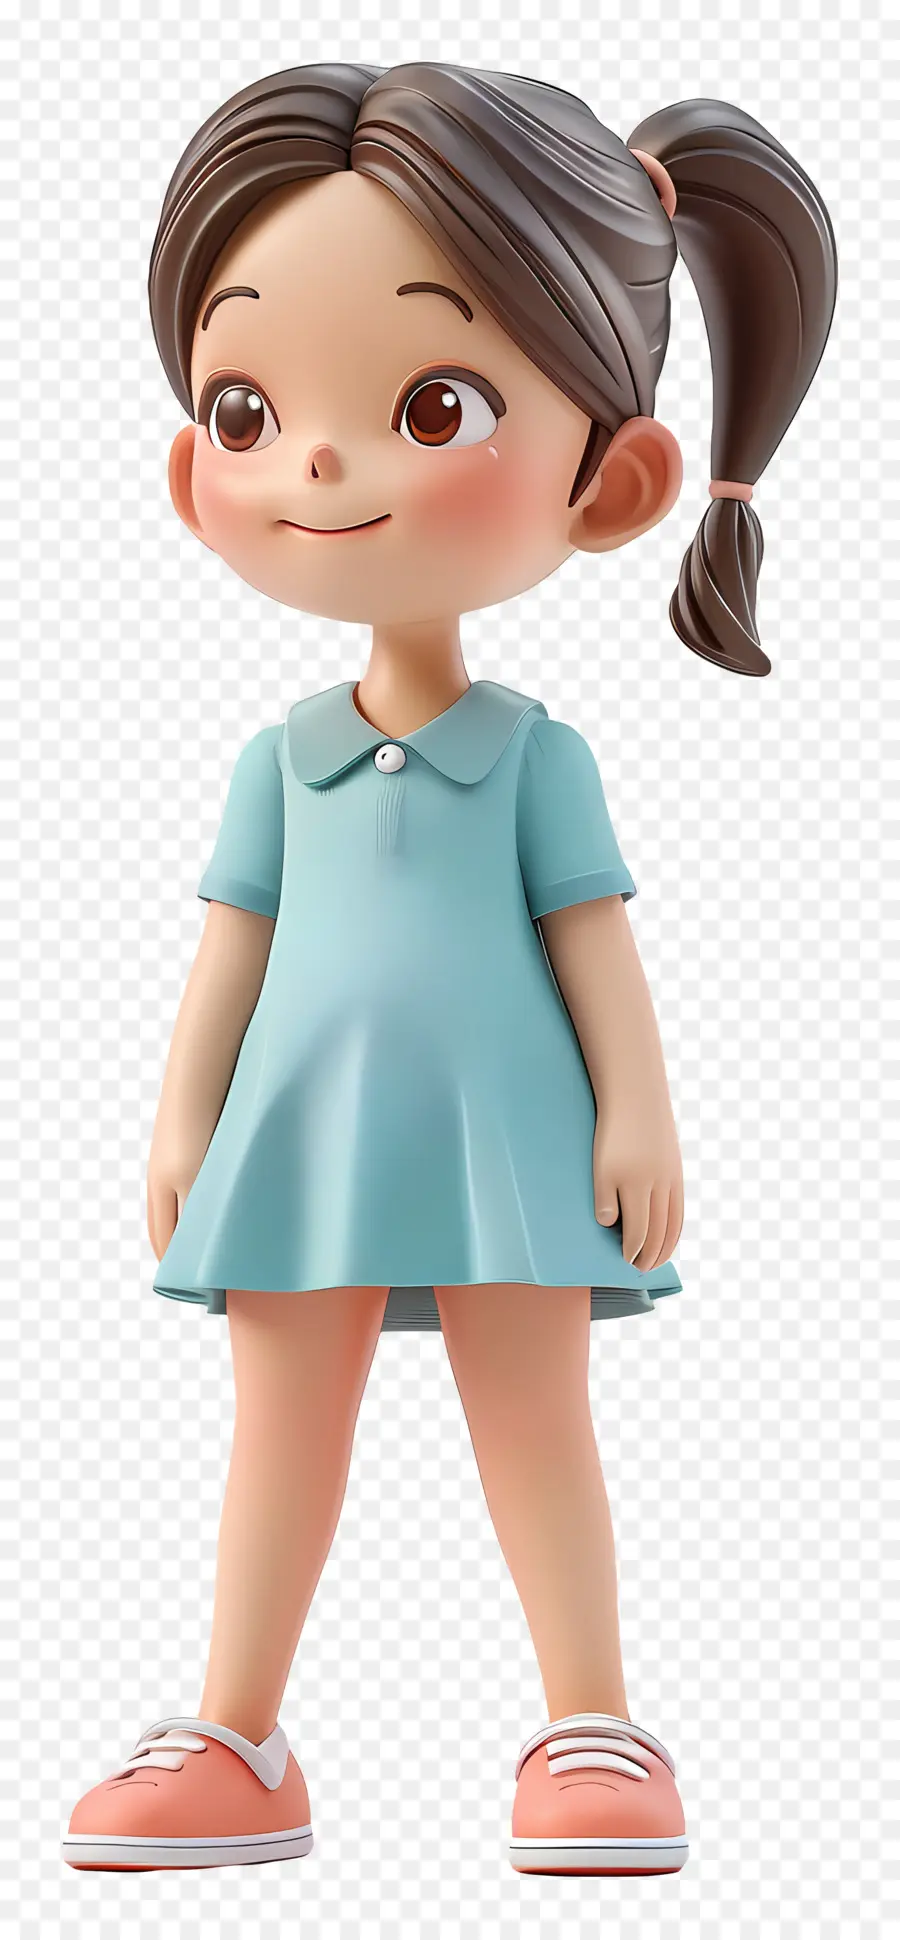 kleines Mädchen stehend Cartoon Charakter Mädchen Polka Punkte Kleid - Cartoon Mädchen in blauem Kleid lächelte glücklich